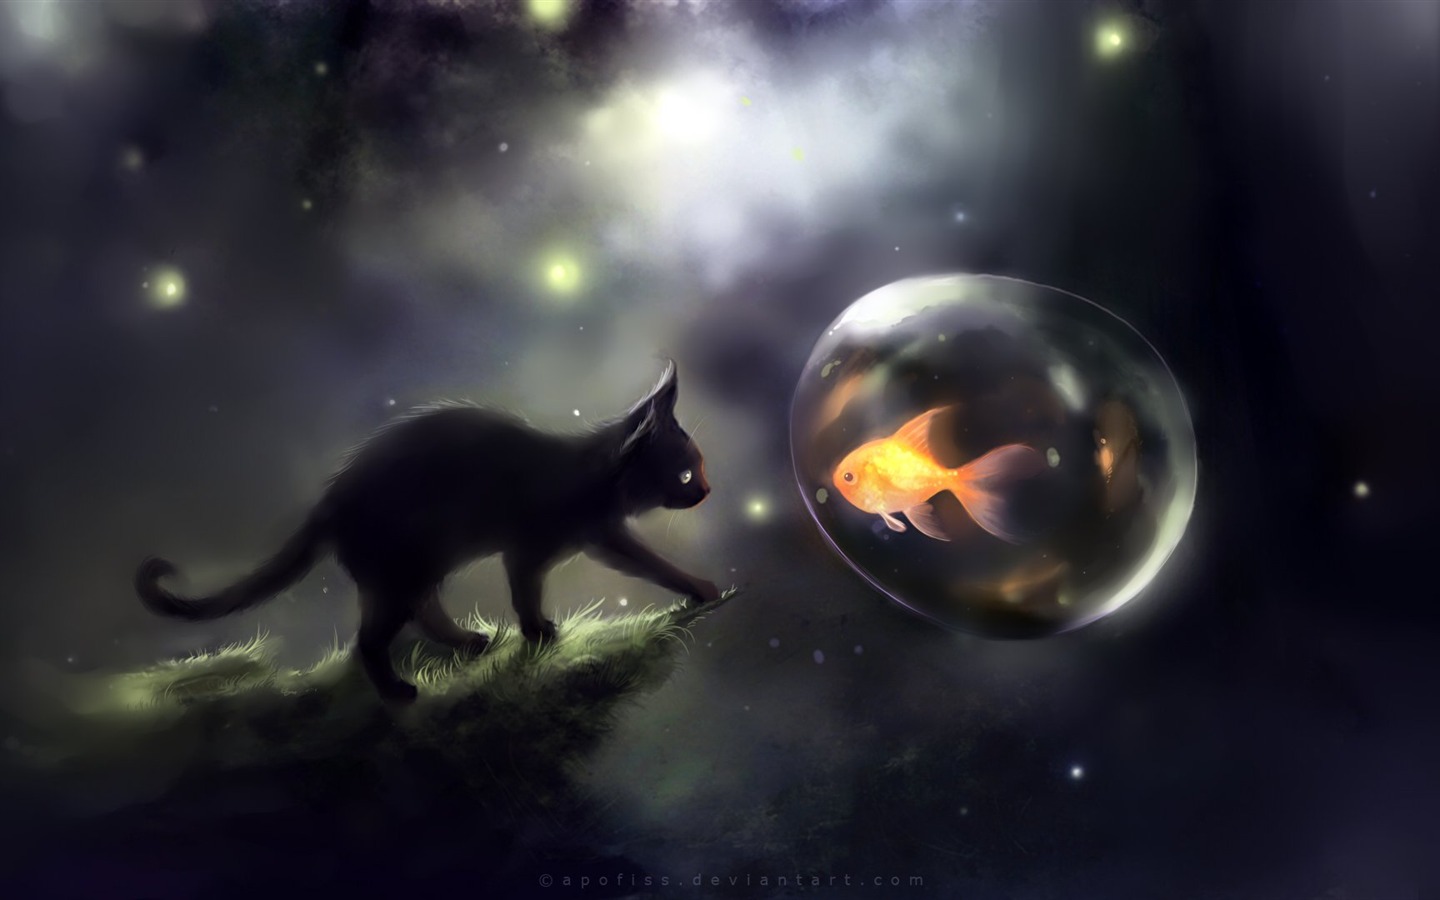 Apofiss 작은 검은 고양이 벽지 수채화 삽화 #1 - 1440x900